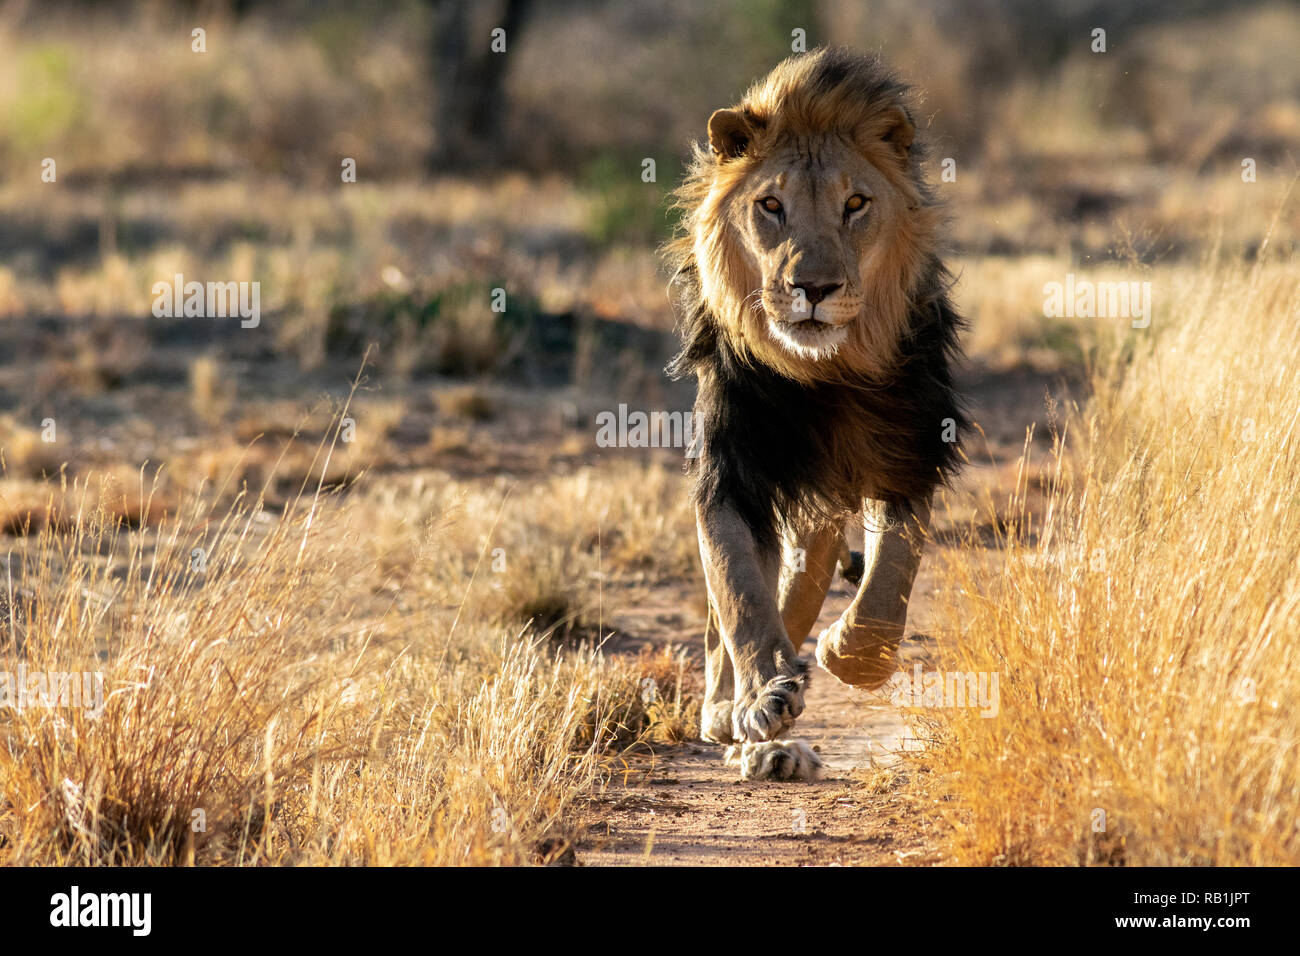 L'African Lion (Panthera leo) en captivité [] - Fondation AfriCat, Okonjima Nature Reserve, Namibie, Afrique Banque D'Images